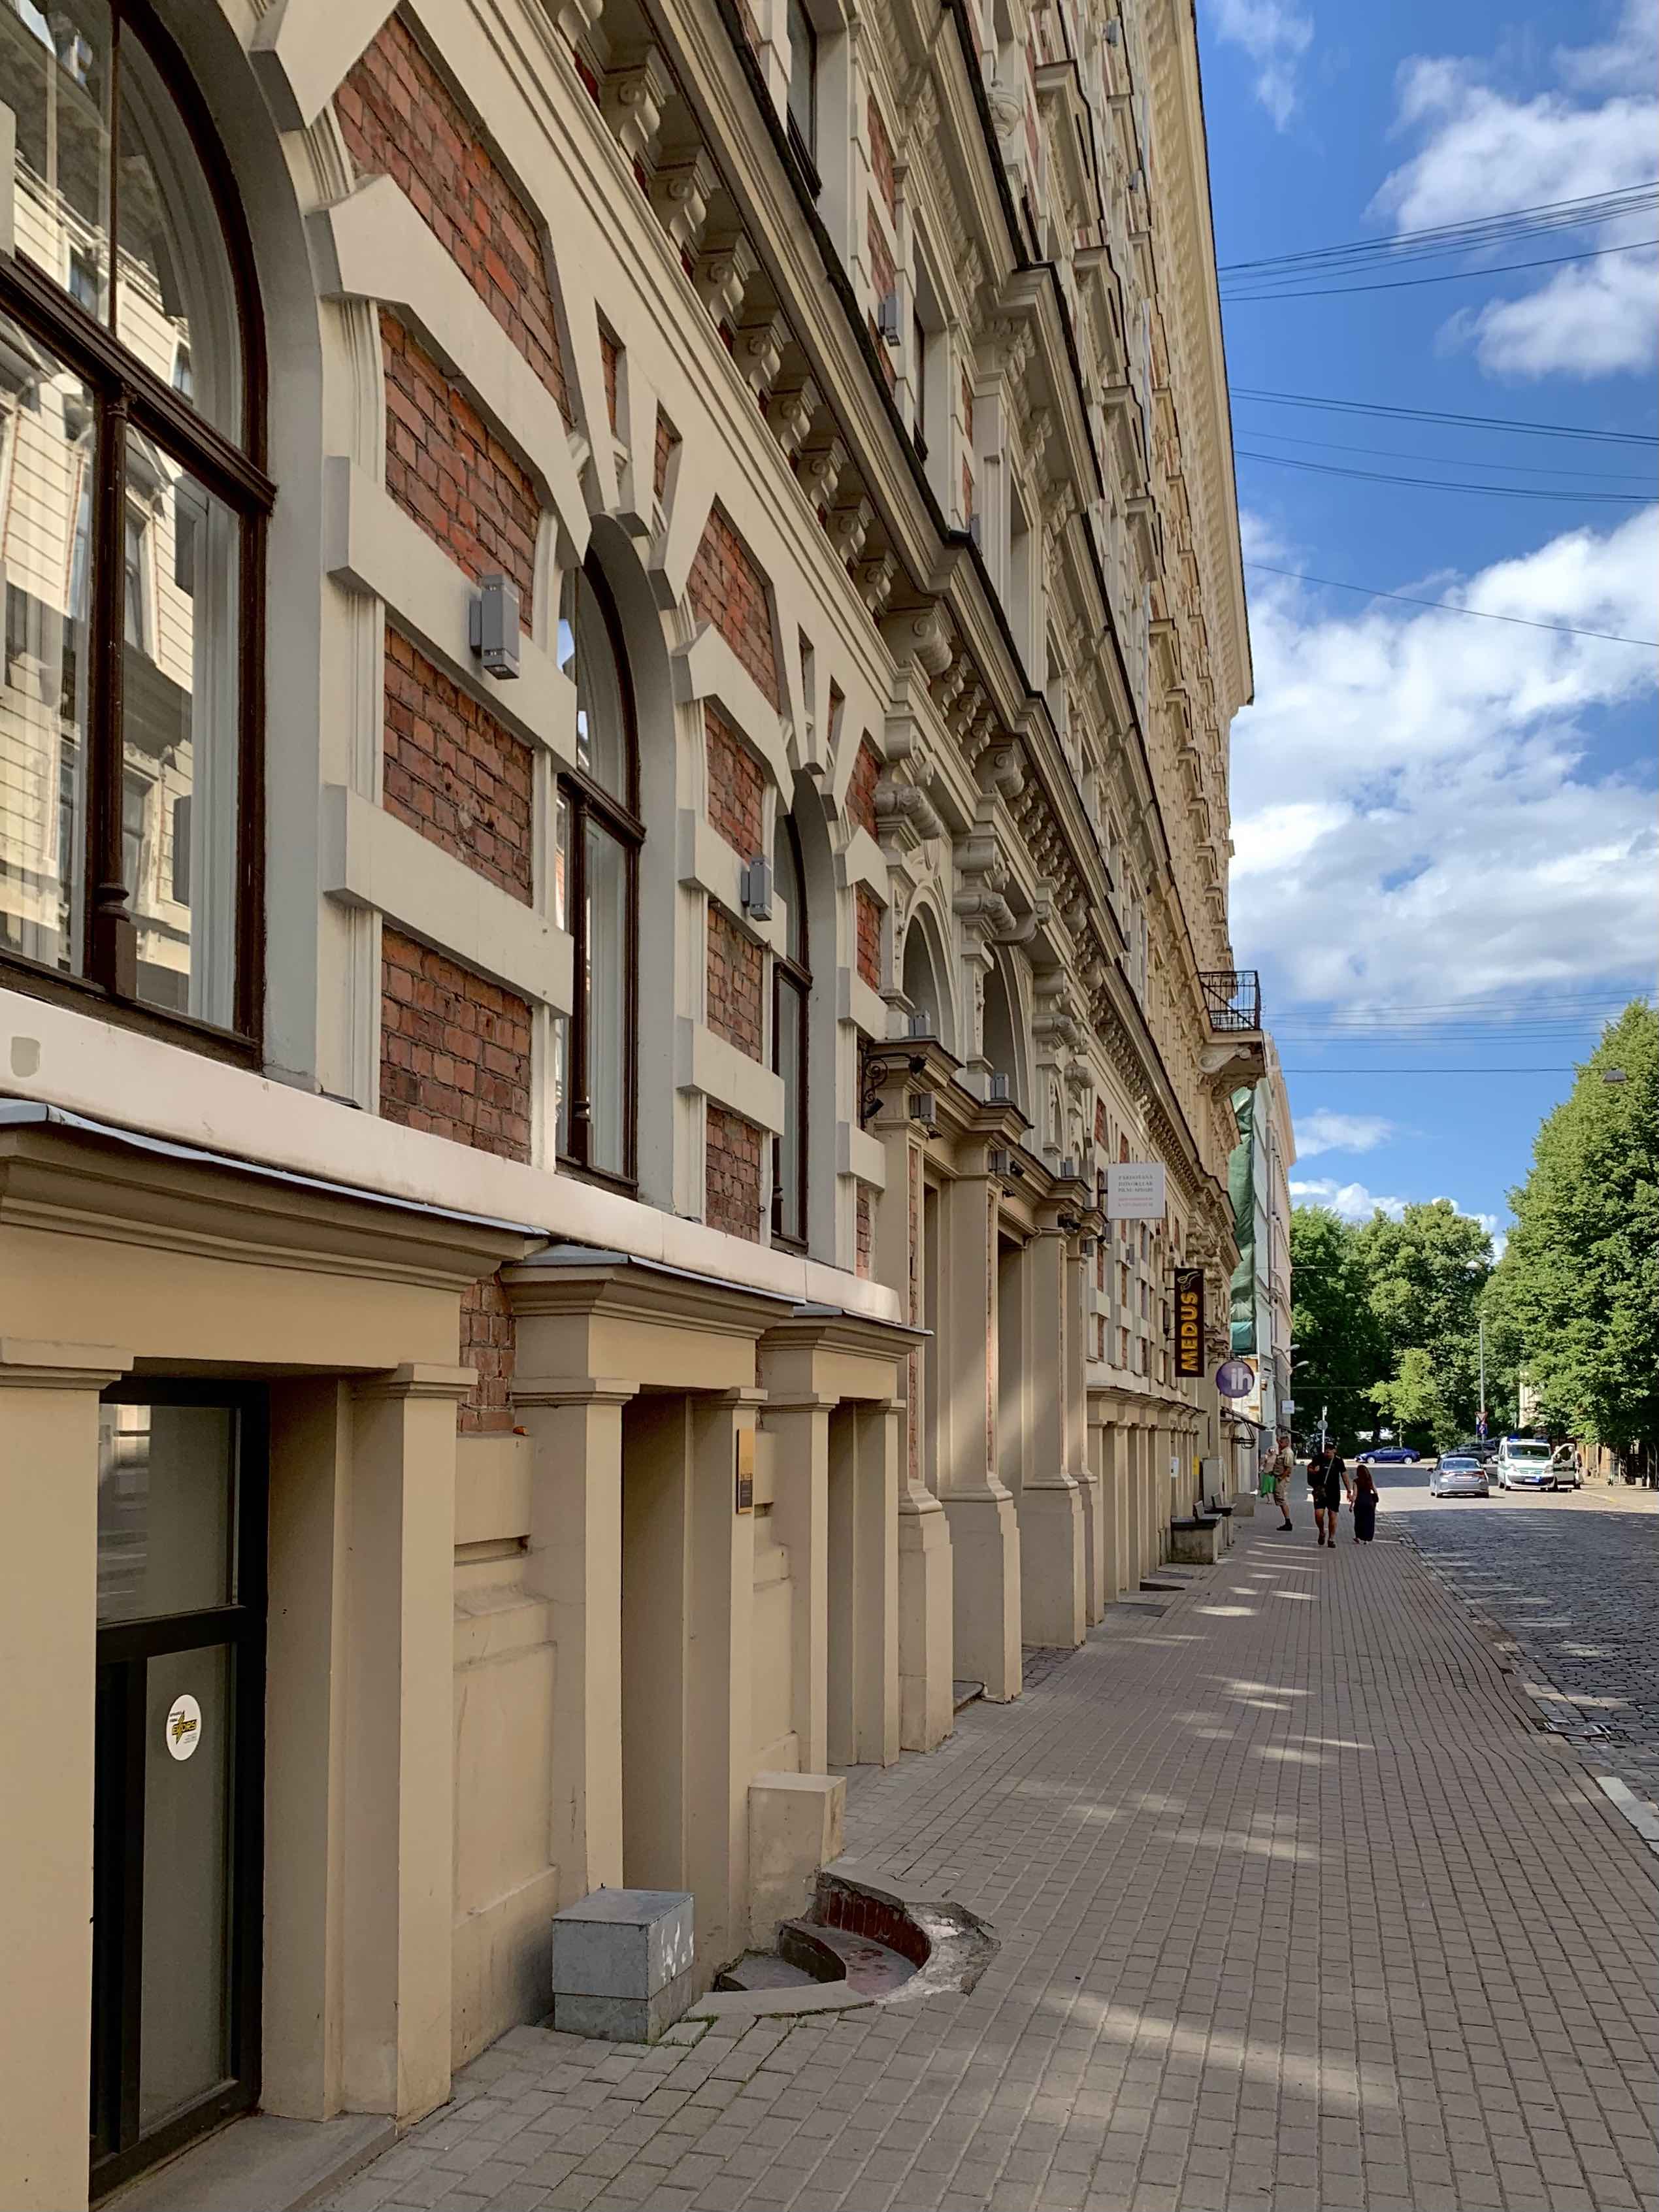 Apartment for rent, Alfrēda Kalniņa street 1 - Image 1